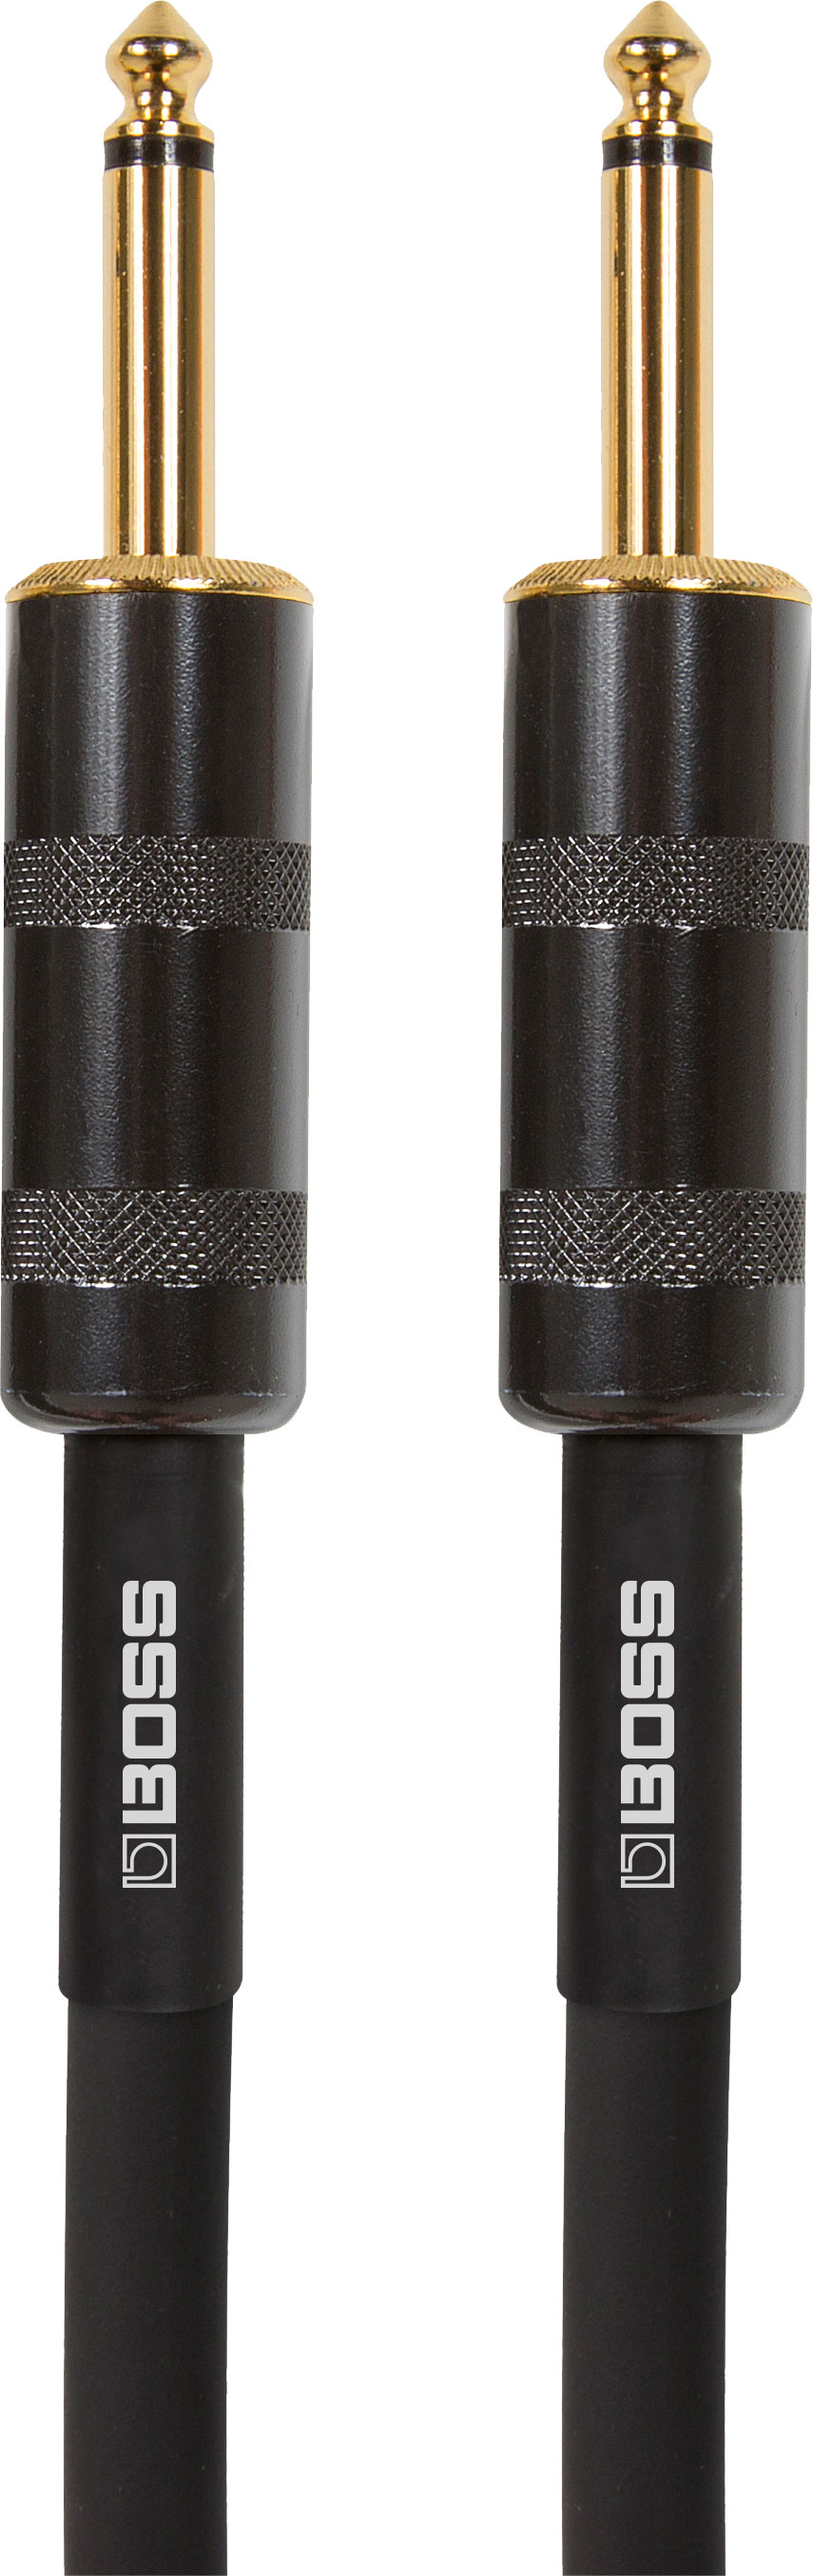 BSC-3 Lautsprecherkabel 1m